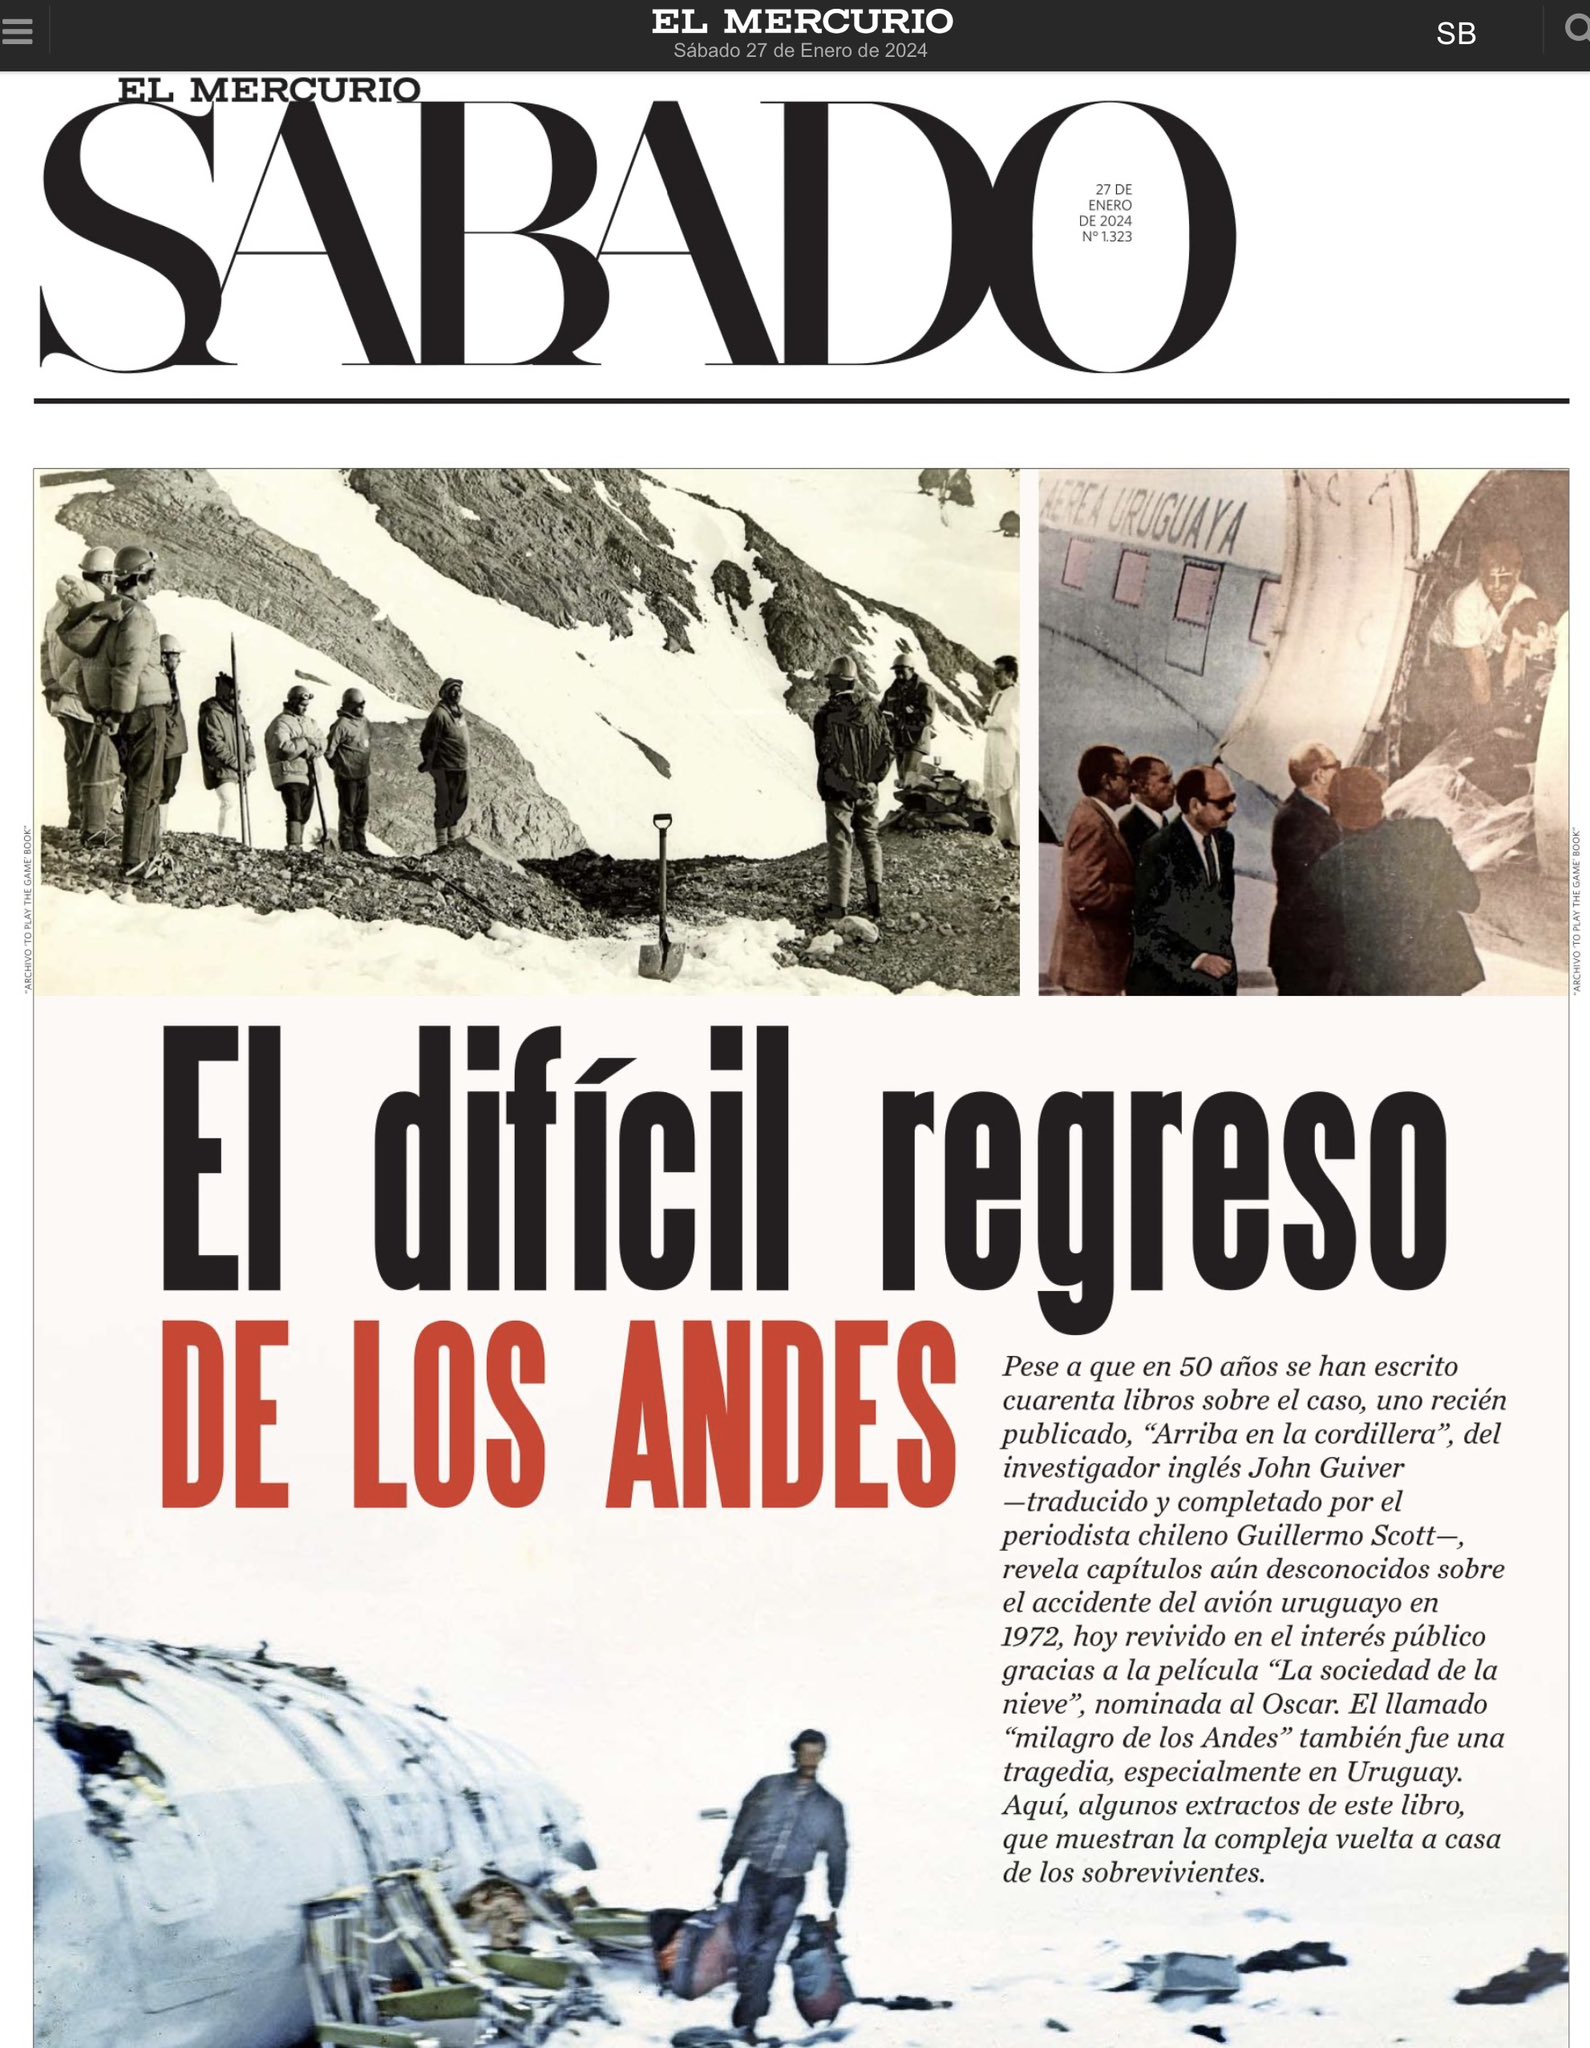 Aldo Lema - Uruguay on X: “Arriba en la Cordillera”, el nuevo libro sobre  La Tragedia de Los Andes, escrito por el investigador británico John  Guiver, es tapa y tema principal de